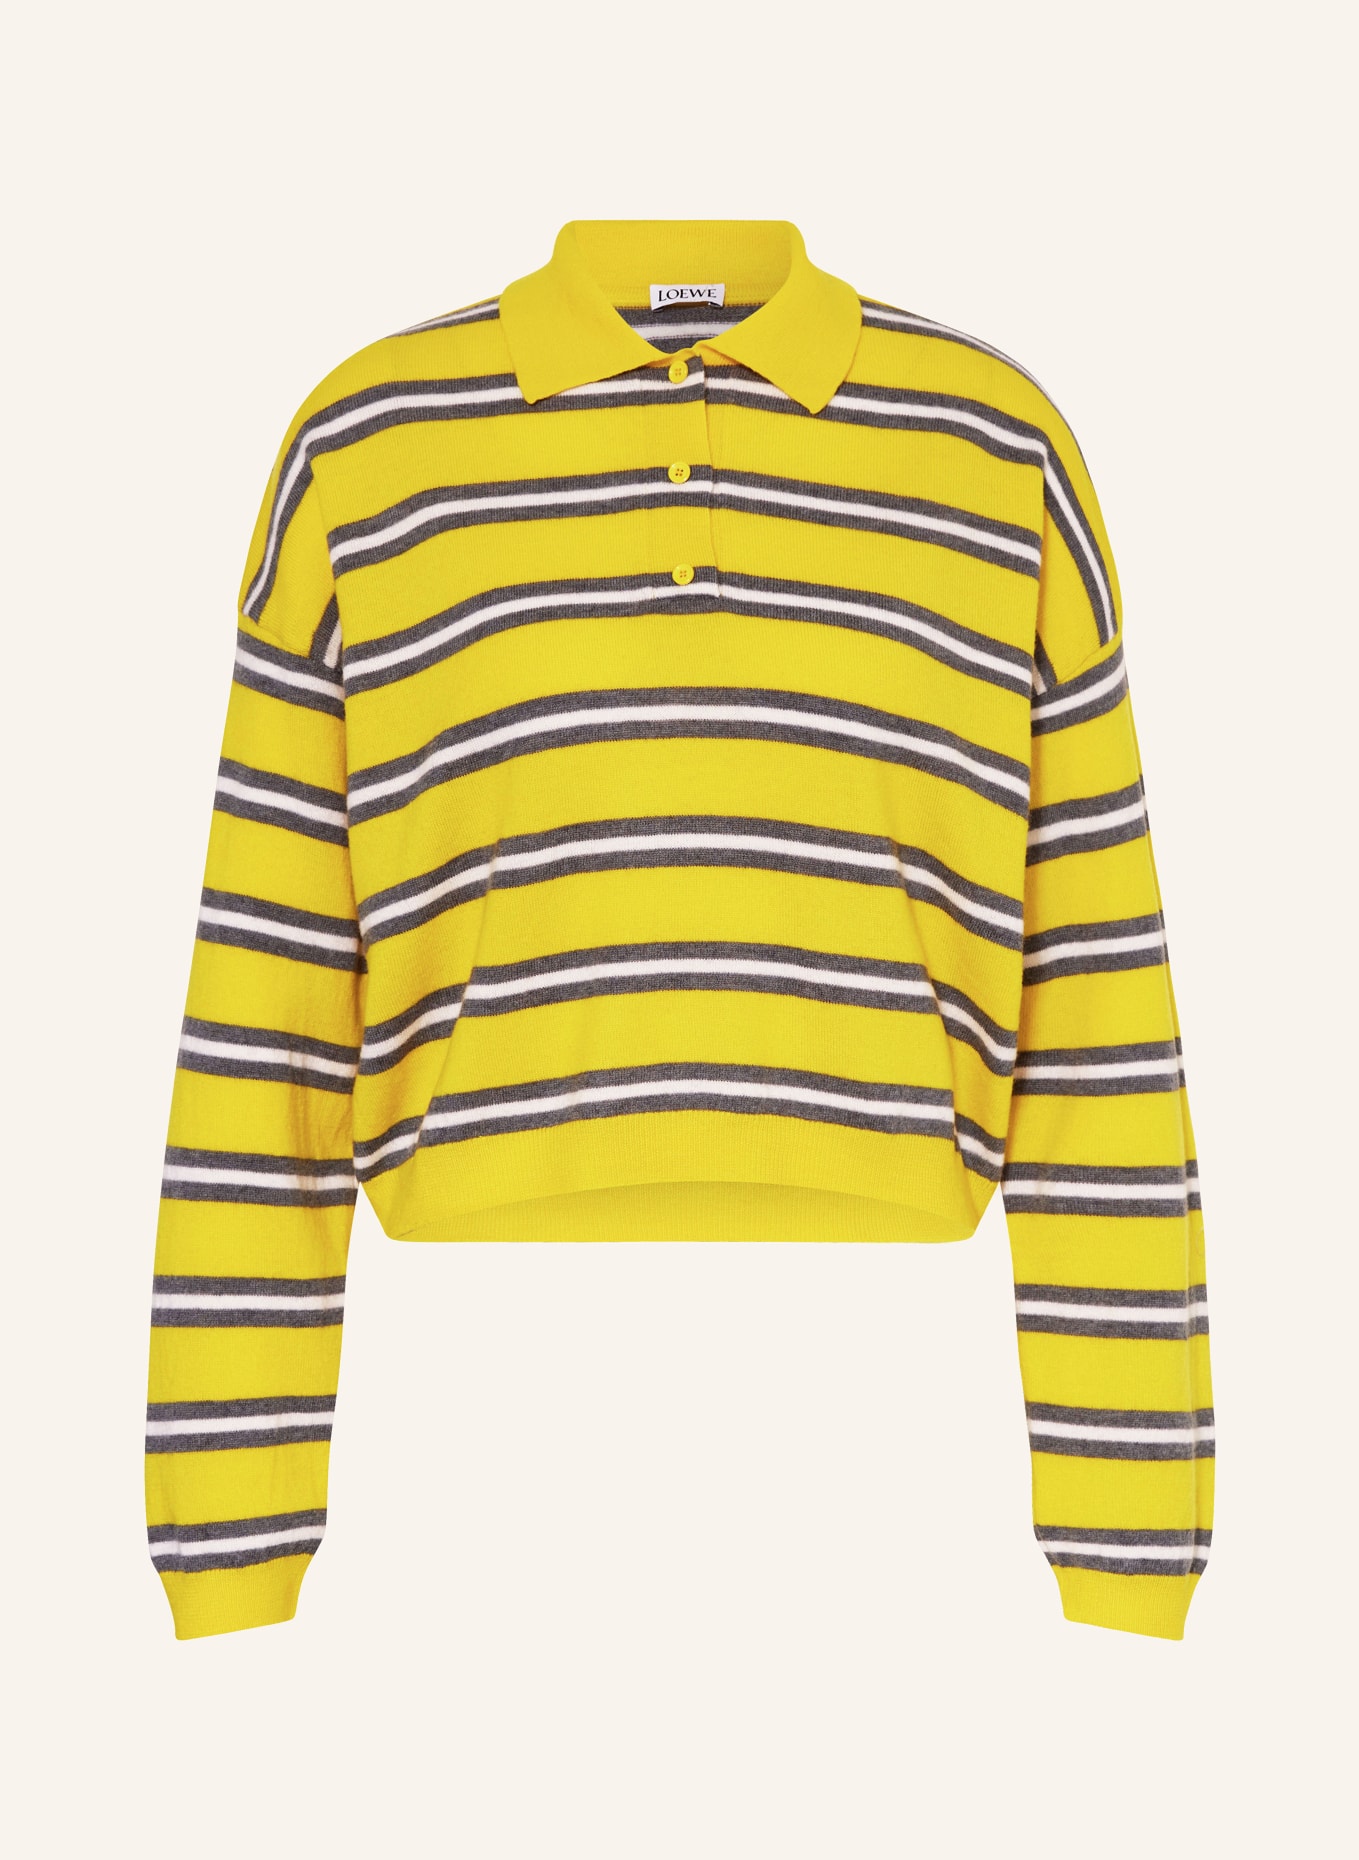 LOEWE Strick-Poloshirt aus Leinen, Farbe: GELB/ GRAU/ WEISS (Bild 1)